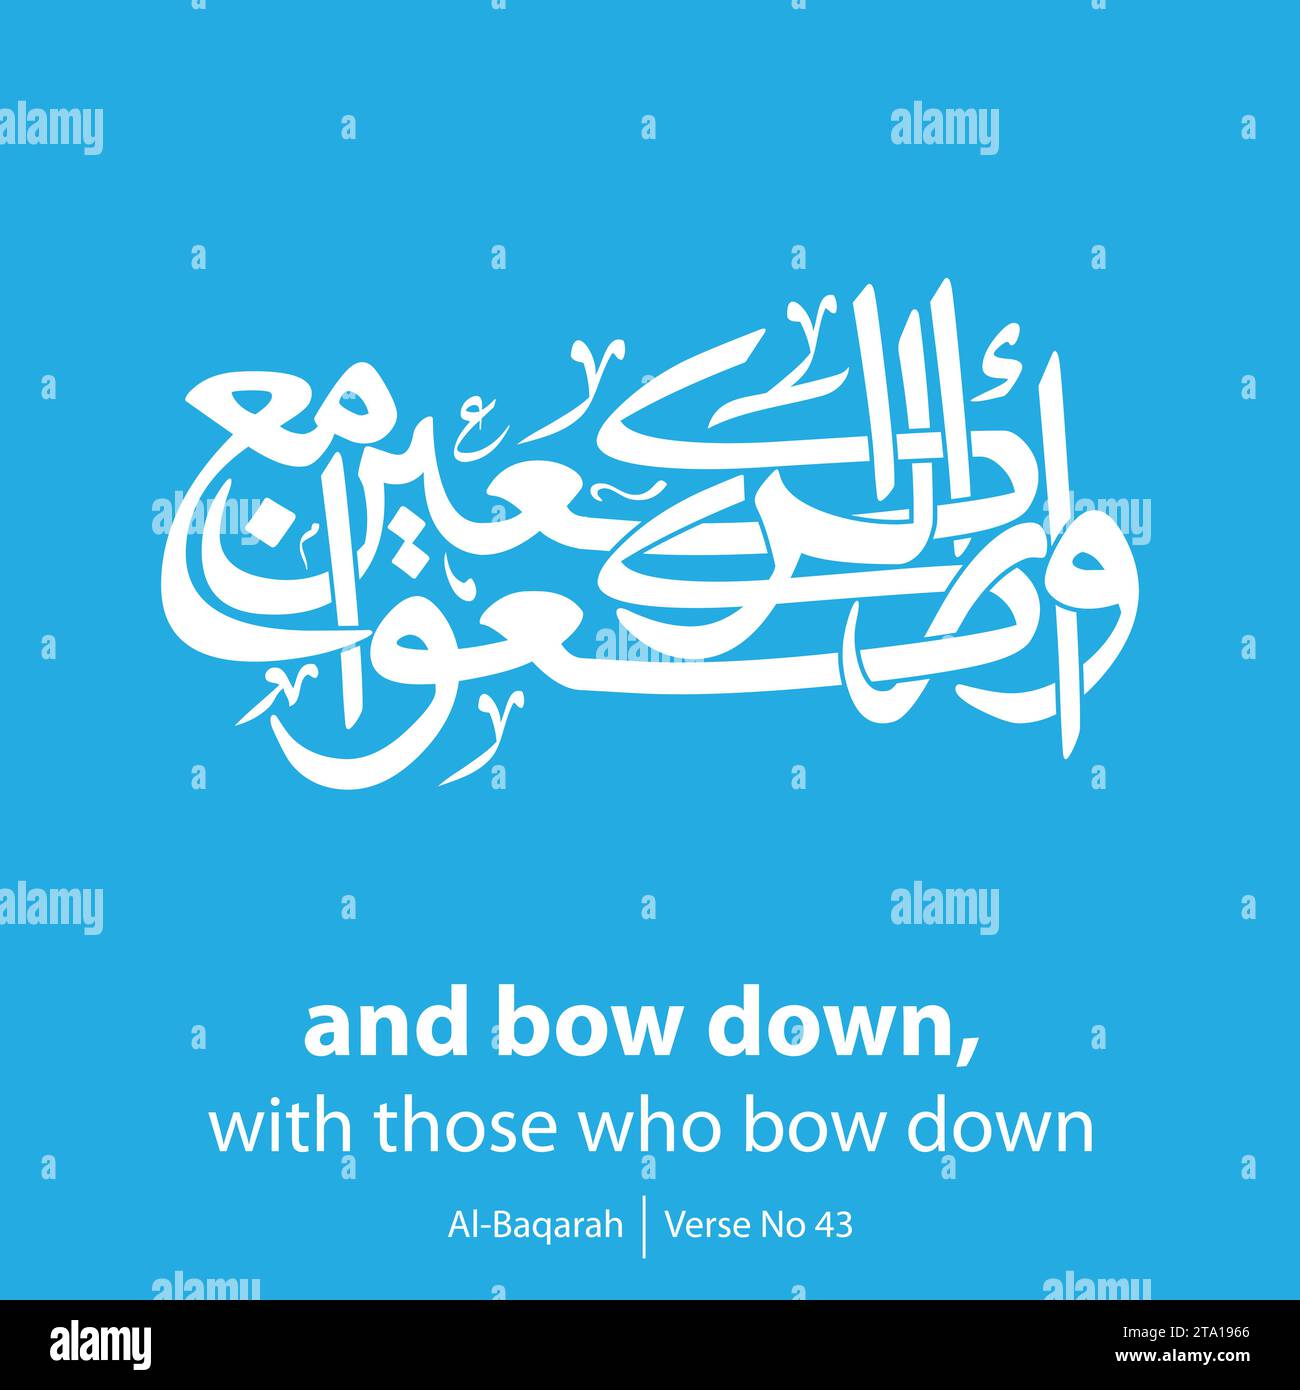 Art calligraphy, inglese tradotto come, and bow down with those who bow down, versetto No 43 da al-Baqarah Illustrazione Vettoriale